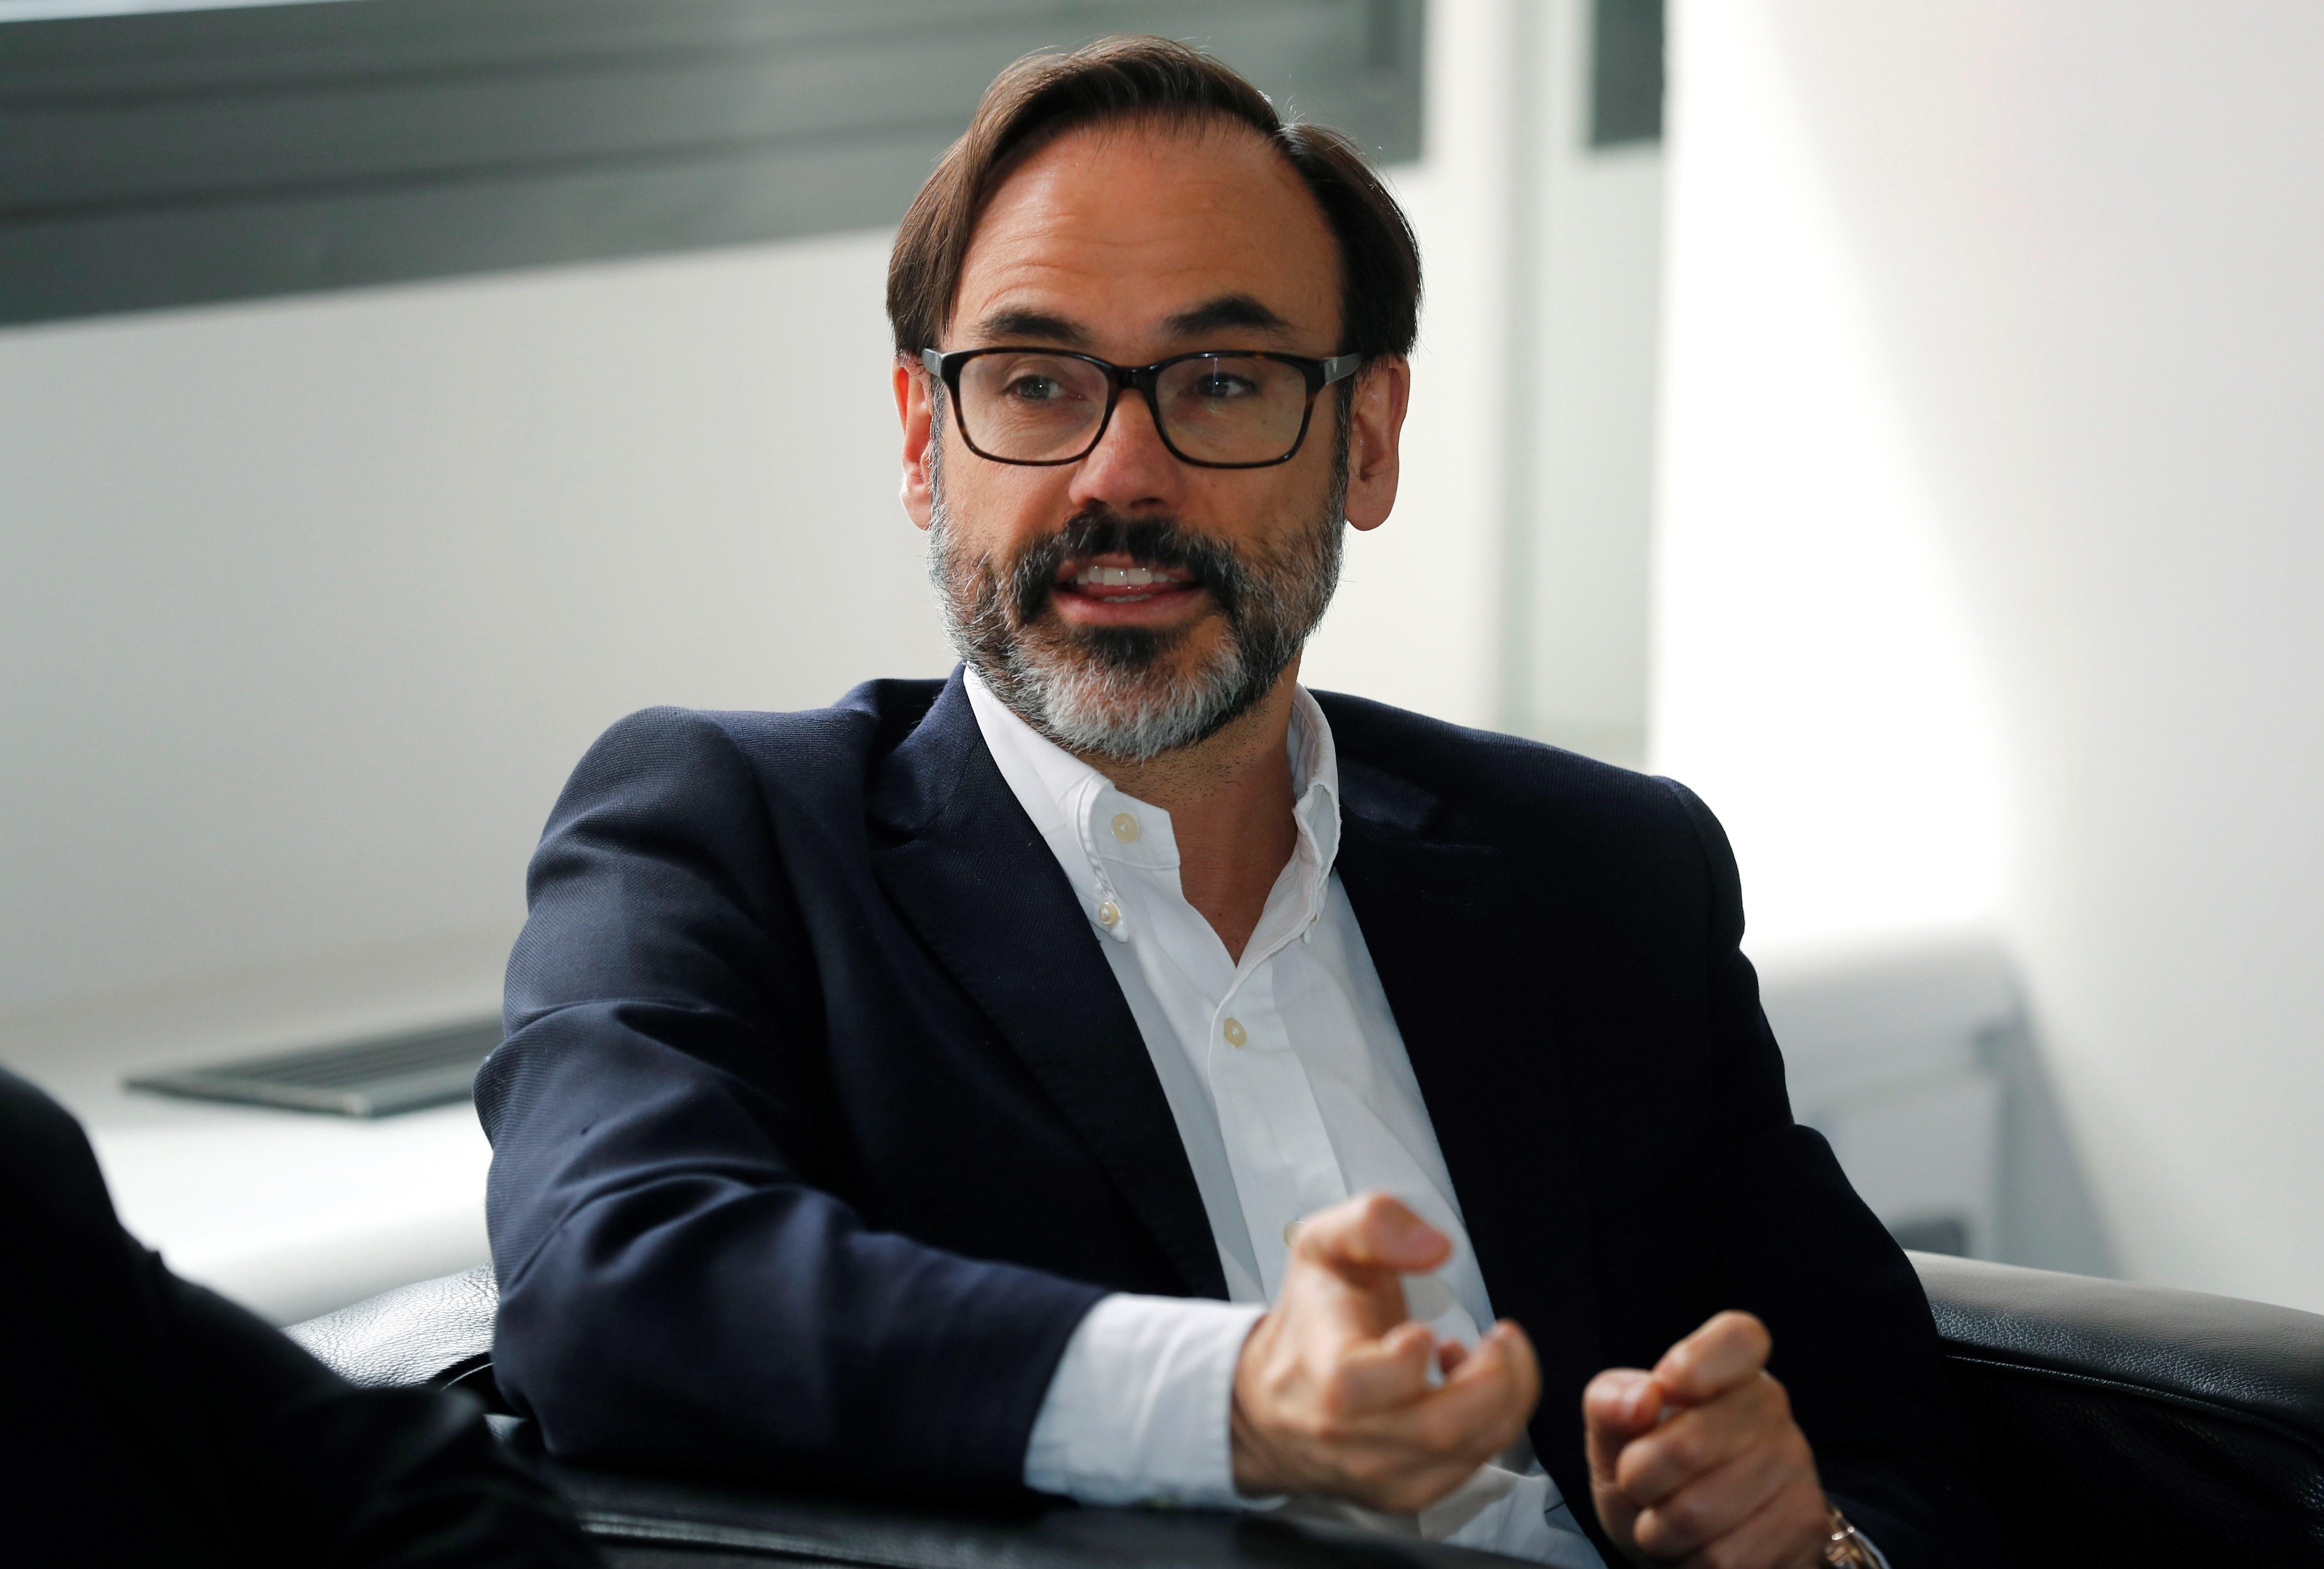 Fernando Garea, proposat com a nou president de l'agència Efe